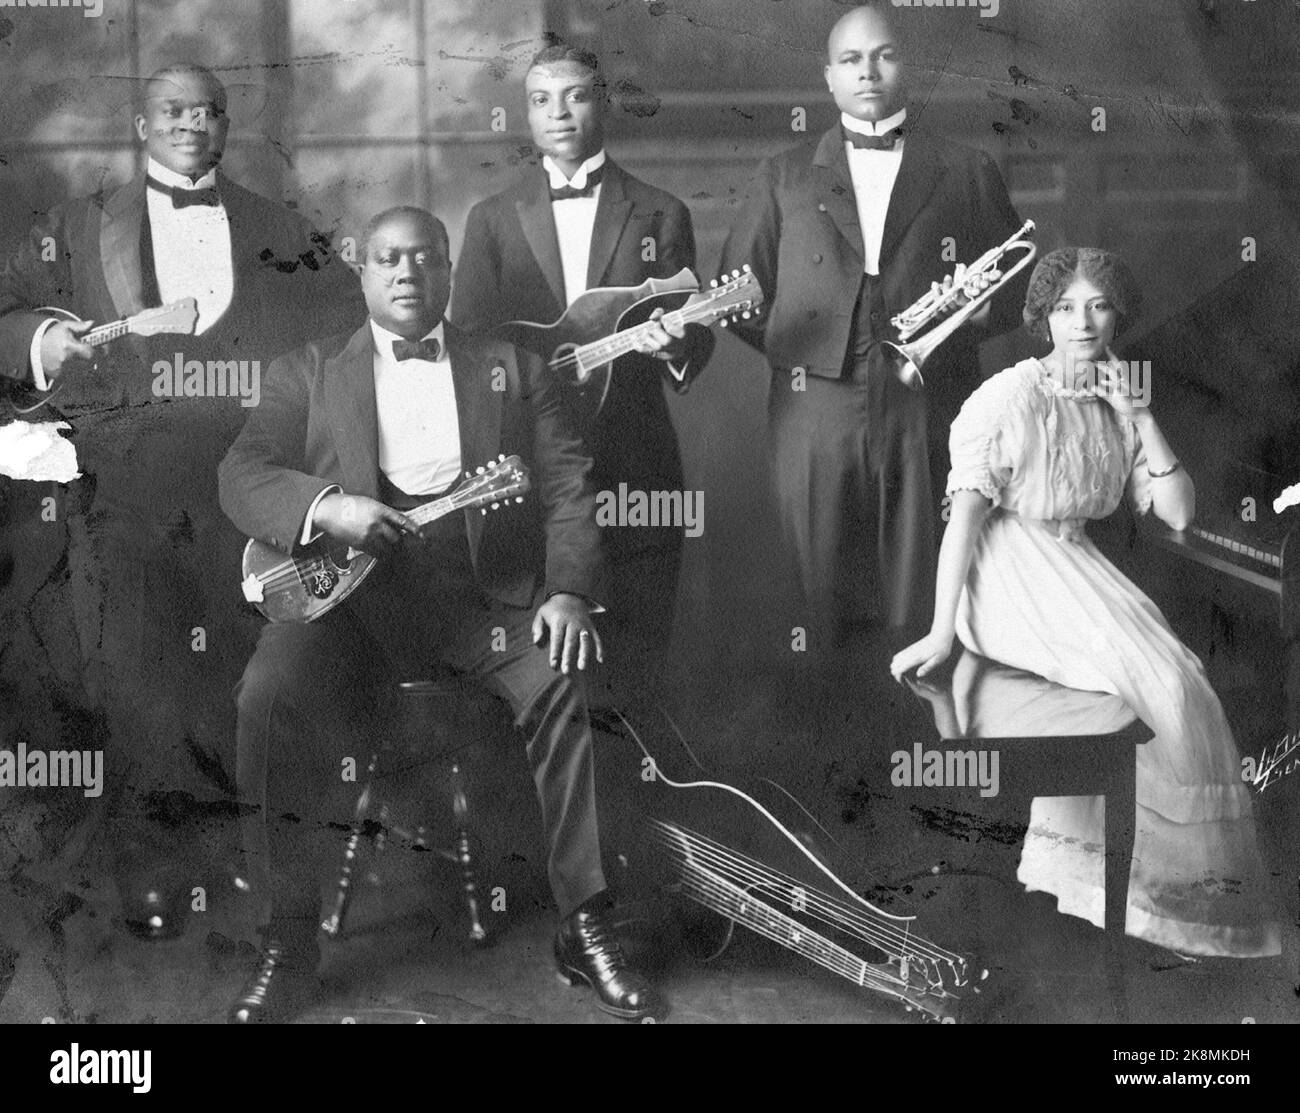 The Whangdoodle Entertainers -1914 - Un Whangdoodle est un qui wangs. Ici, nous voyons cinq wangdooodlers sur le point de faire du wang! Banque D'Images